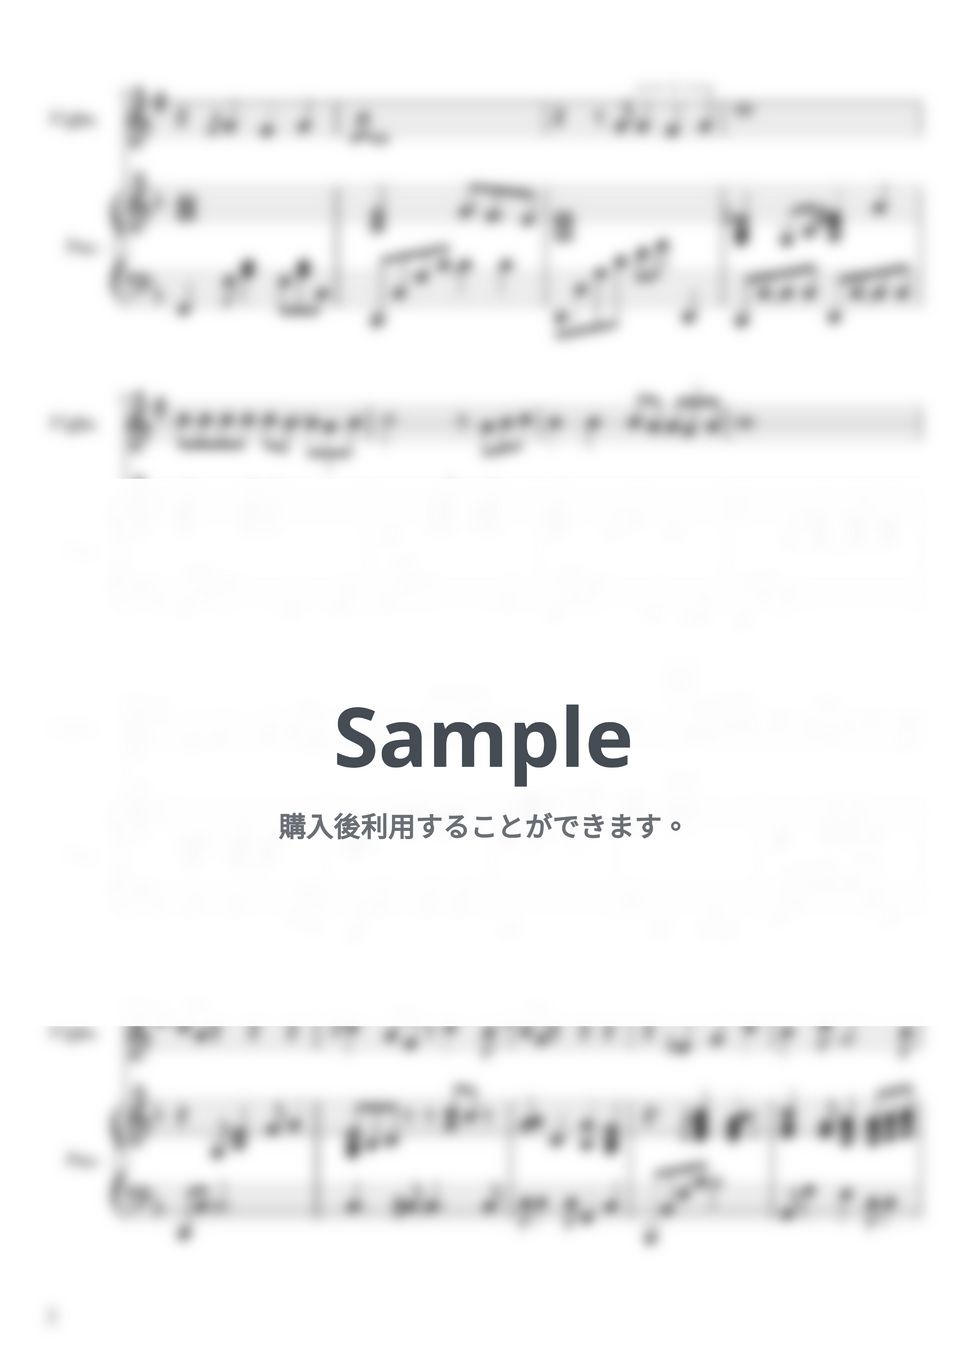 久石譲 - となりのトトロ Bb管　ピアノ伴奏 by yuni